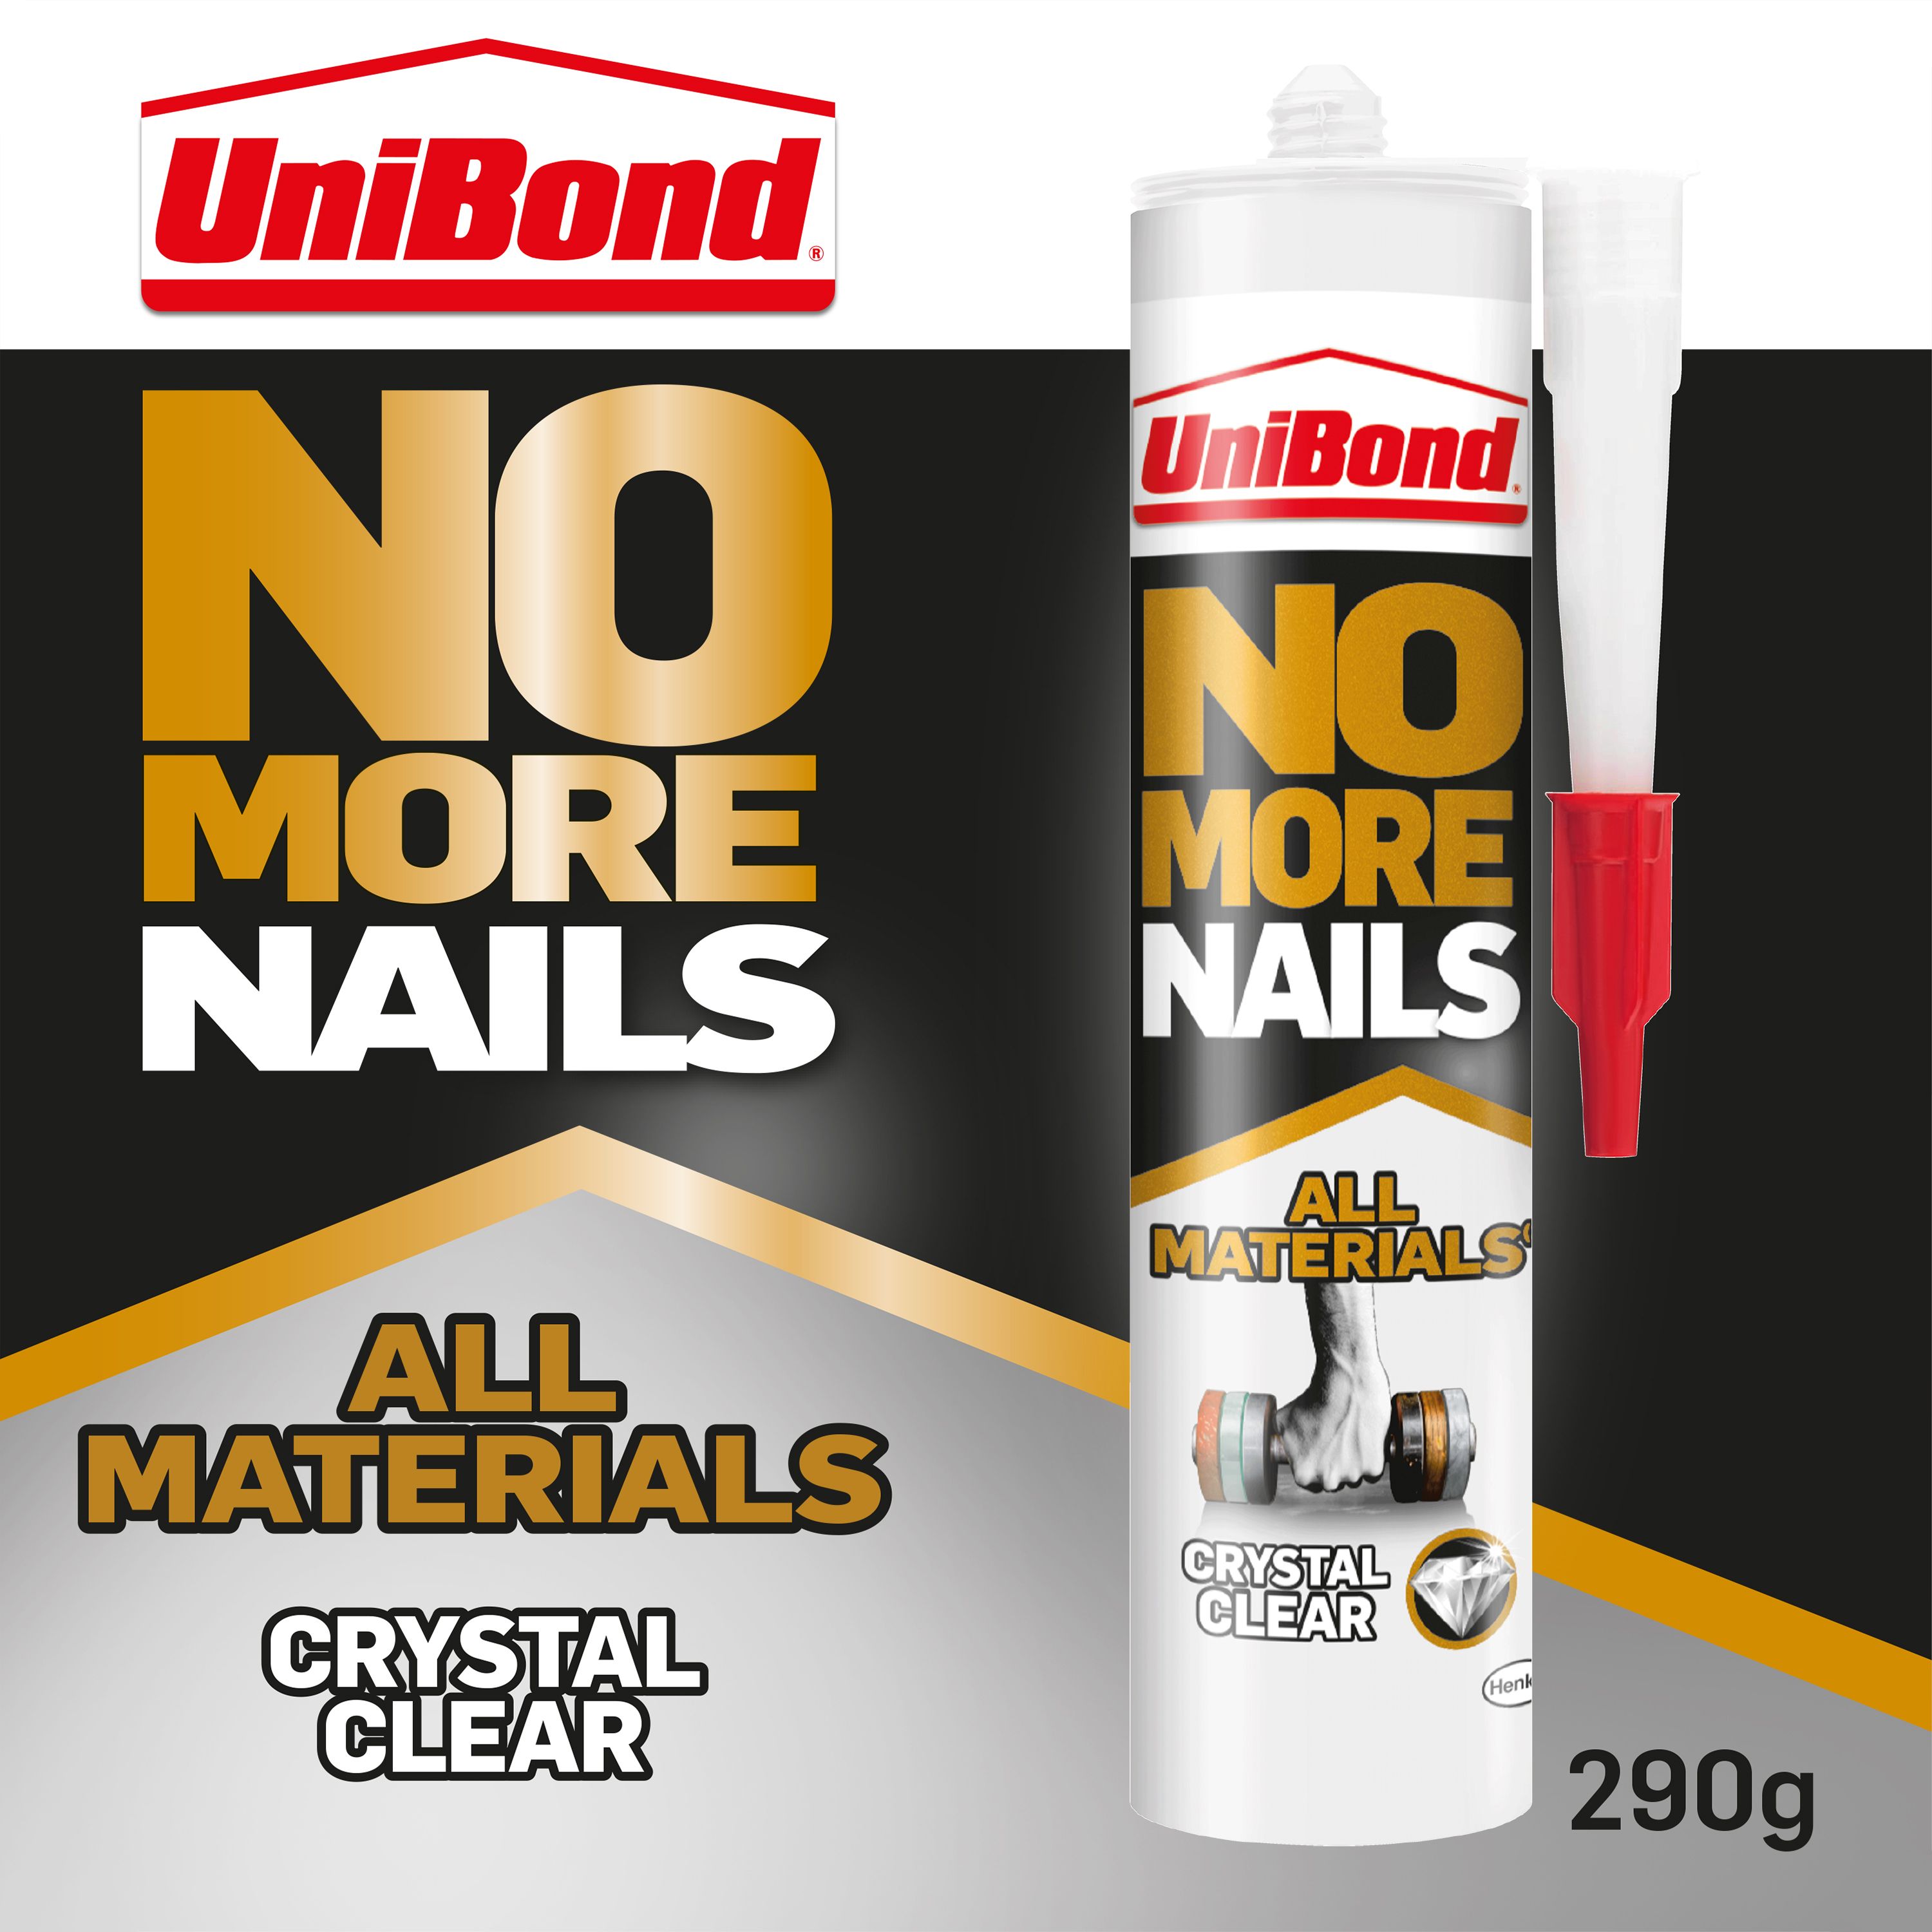 UniBond No More Nails Crystal Clear All materials Grab adhesive 290g